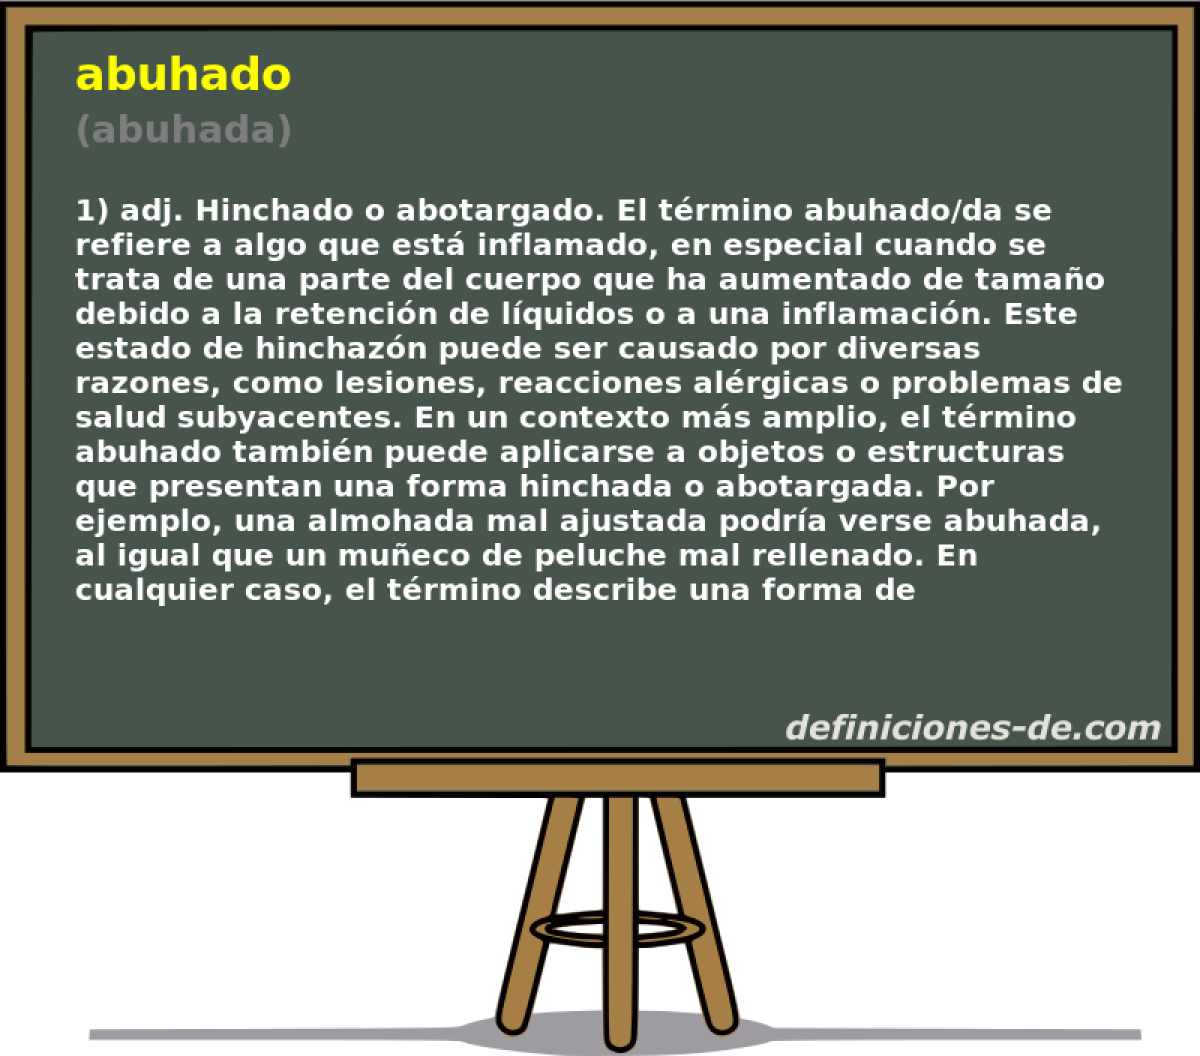 abuhado (abuhada)